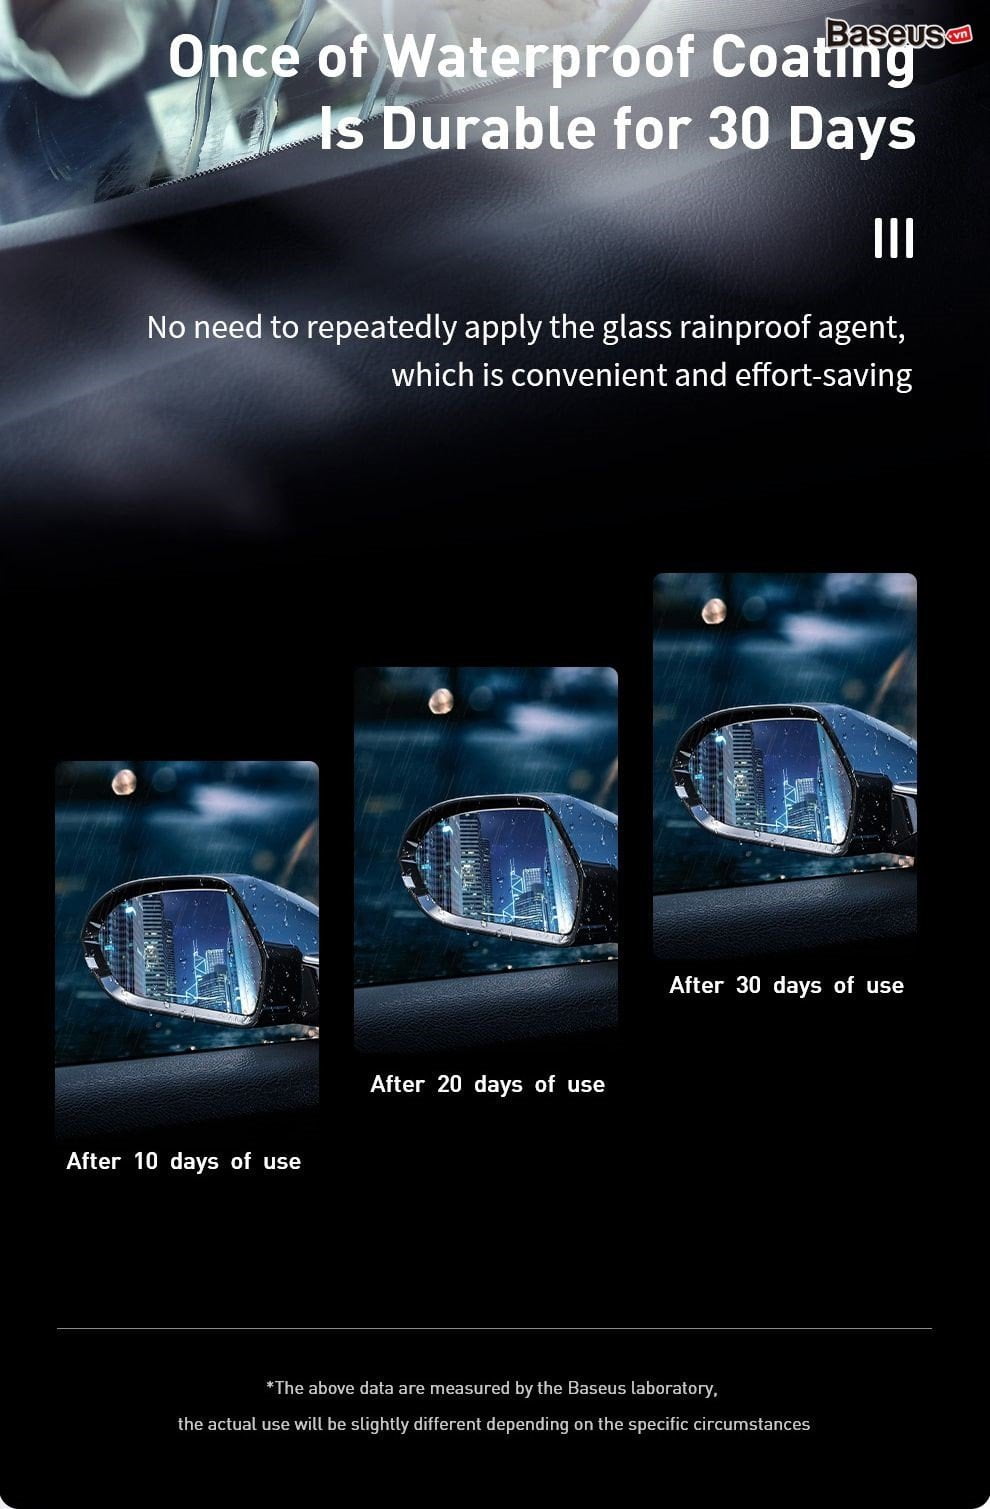 keen vision glass rainproof agent 10 1911c7edfb1b4b0ca6e61487fd2308af